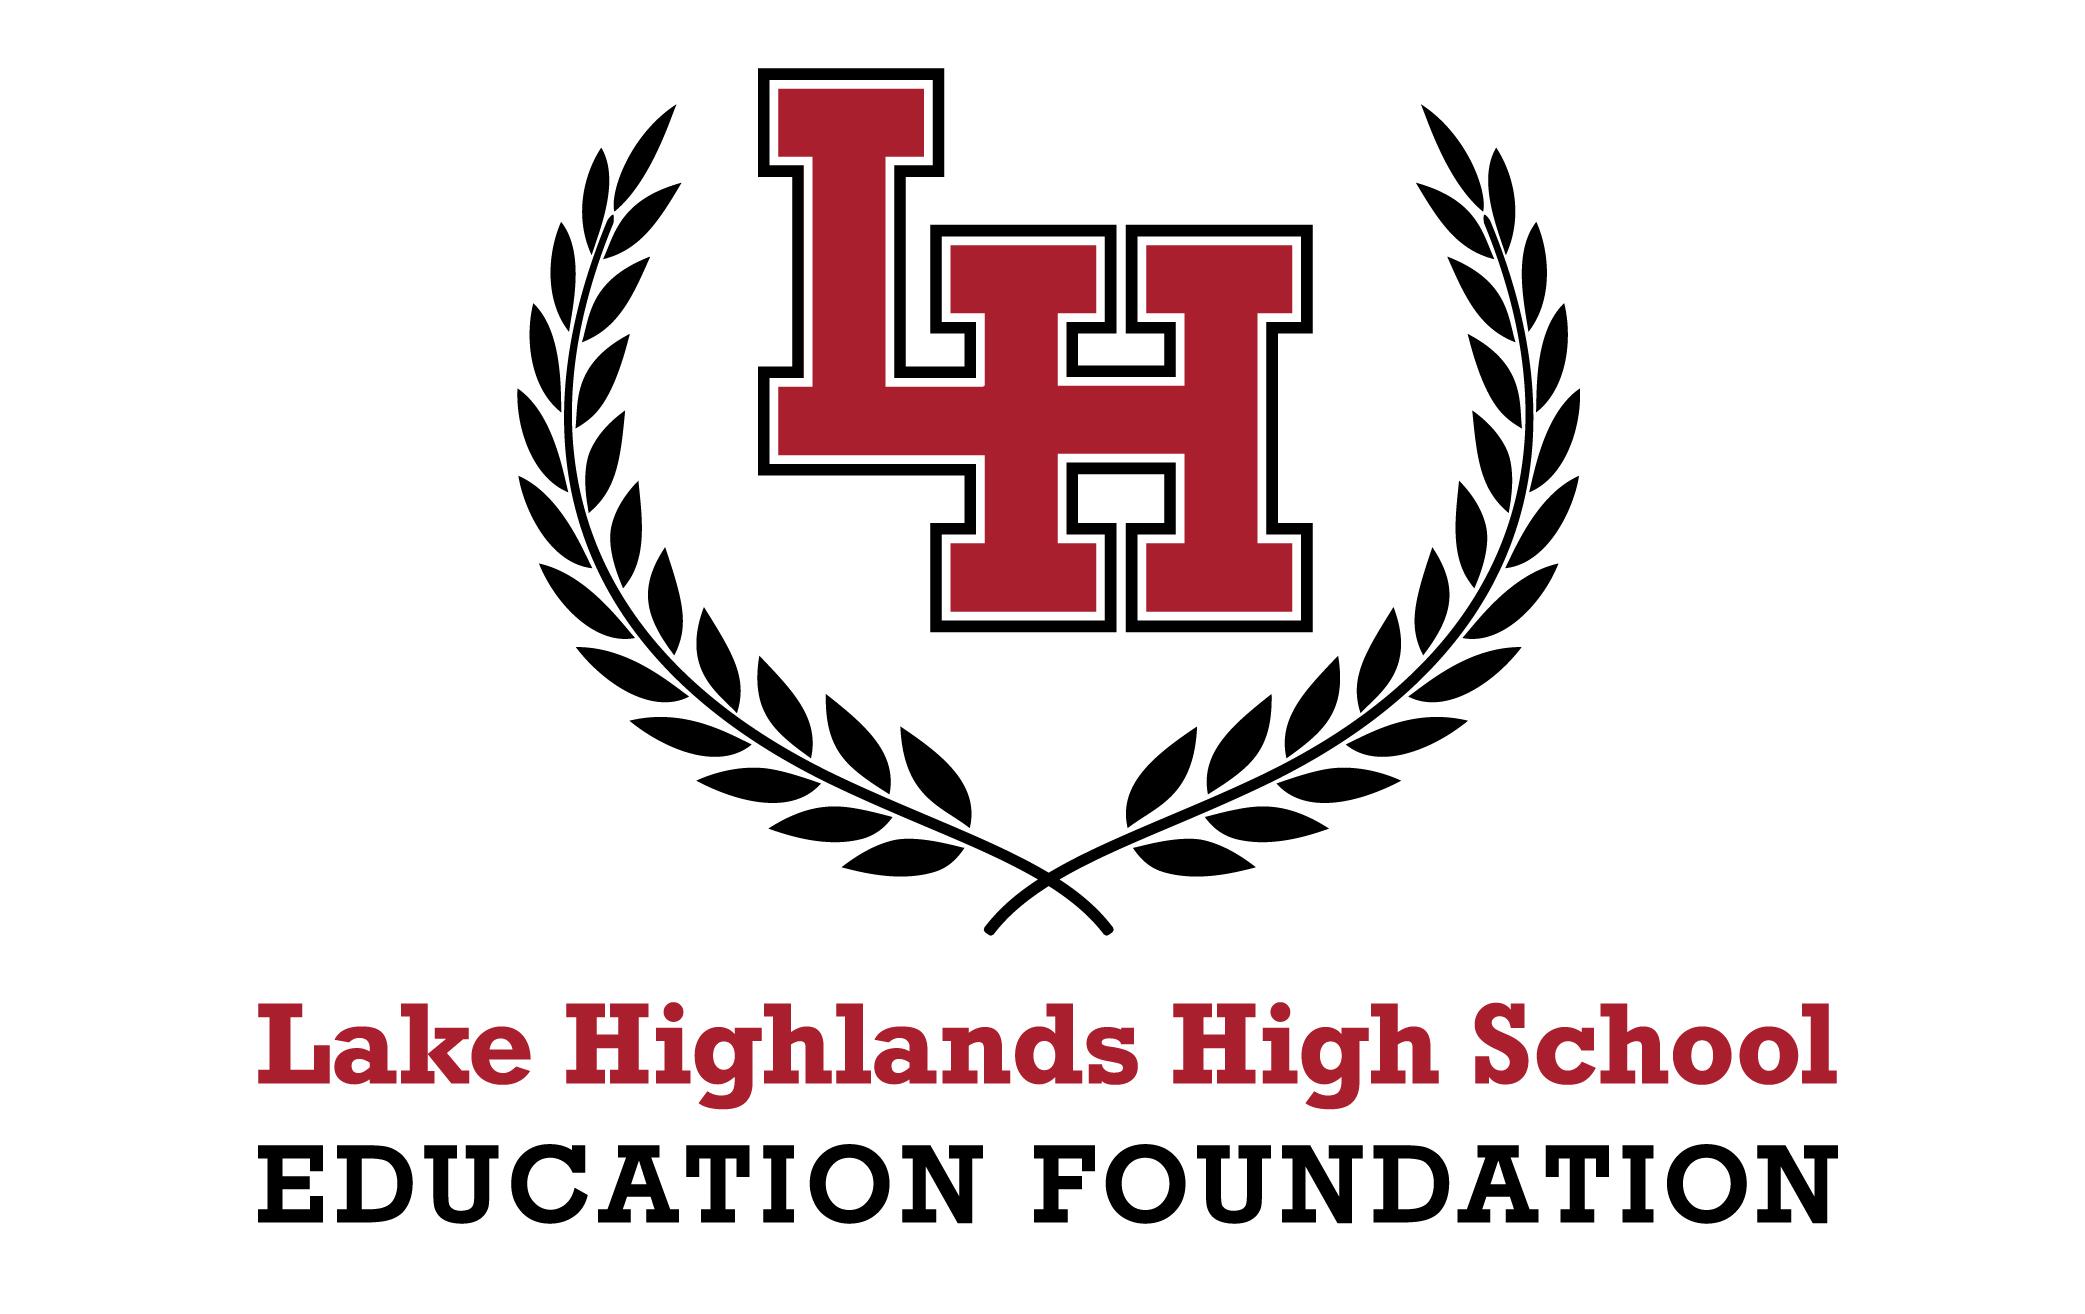 LHHS Alumni Association Lake Highlands High School Education